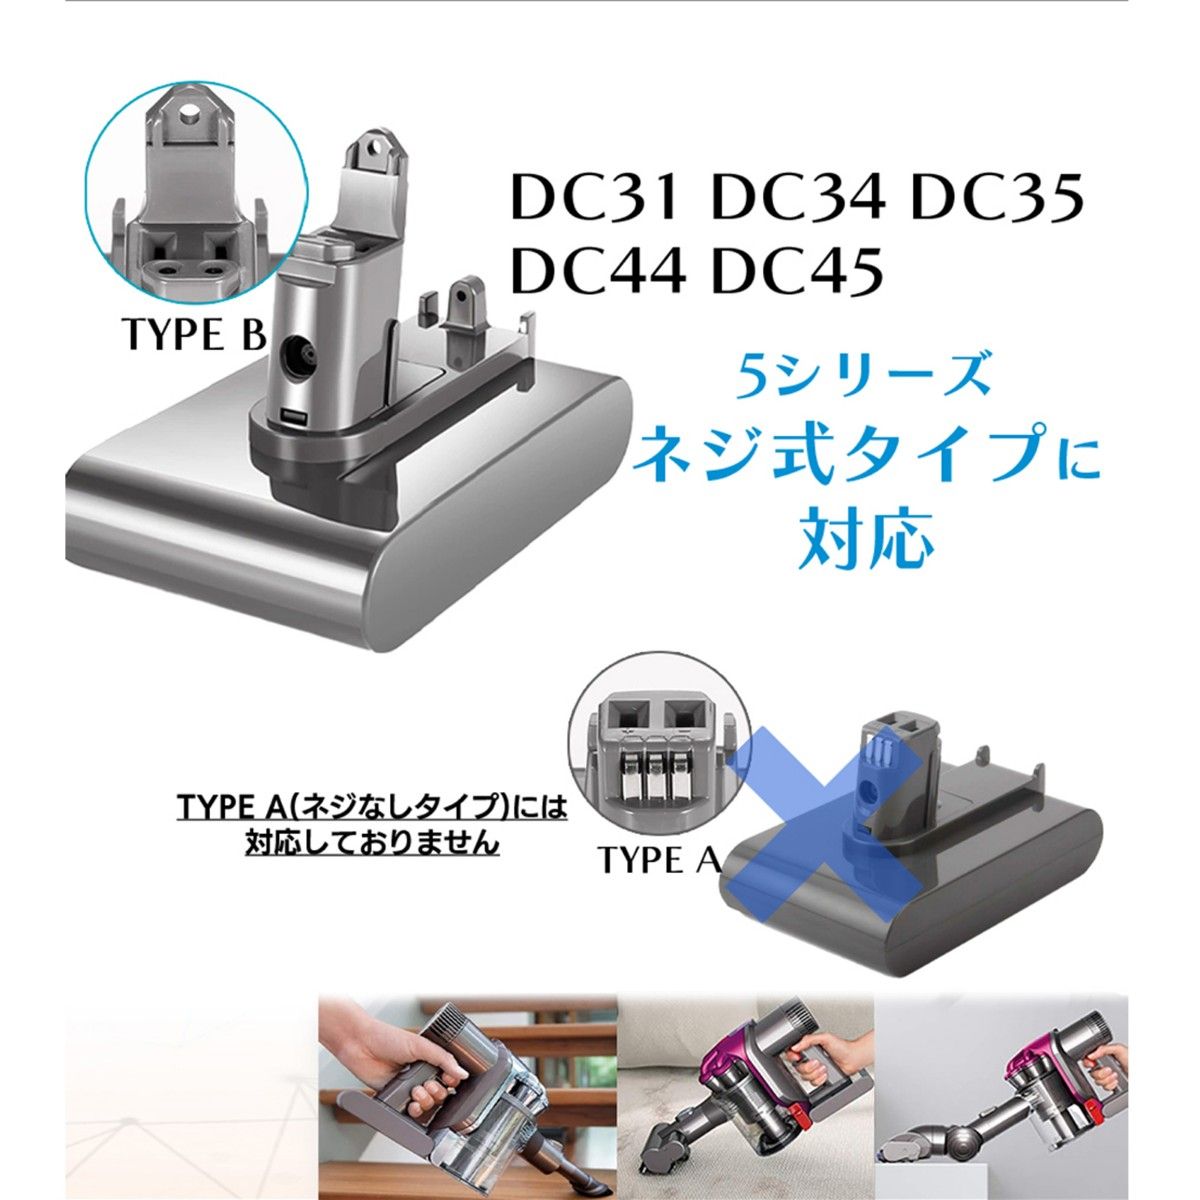 ダイソン DC31 DC34 DC35 DC44 DC45 バッテリー 大容量 2200mAh ネジ式 dyson 掃除機